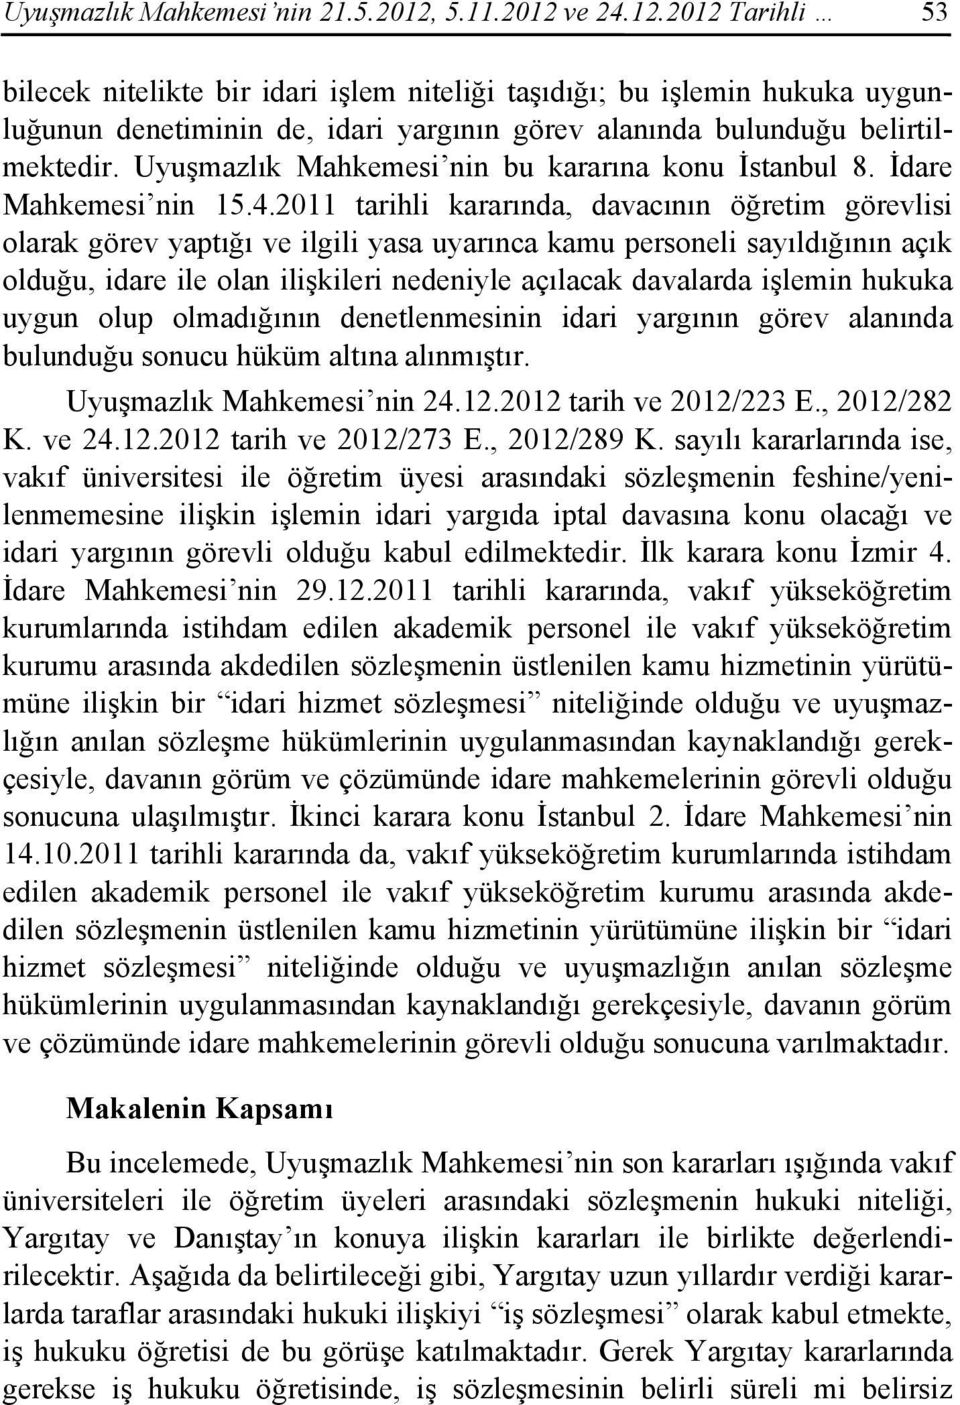 Uyuşmazlık Mahkemesi nin bu kararına konu İstanbul 8. İdare Mahkemesi nin 15.4.